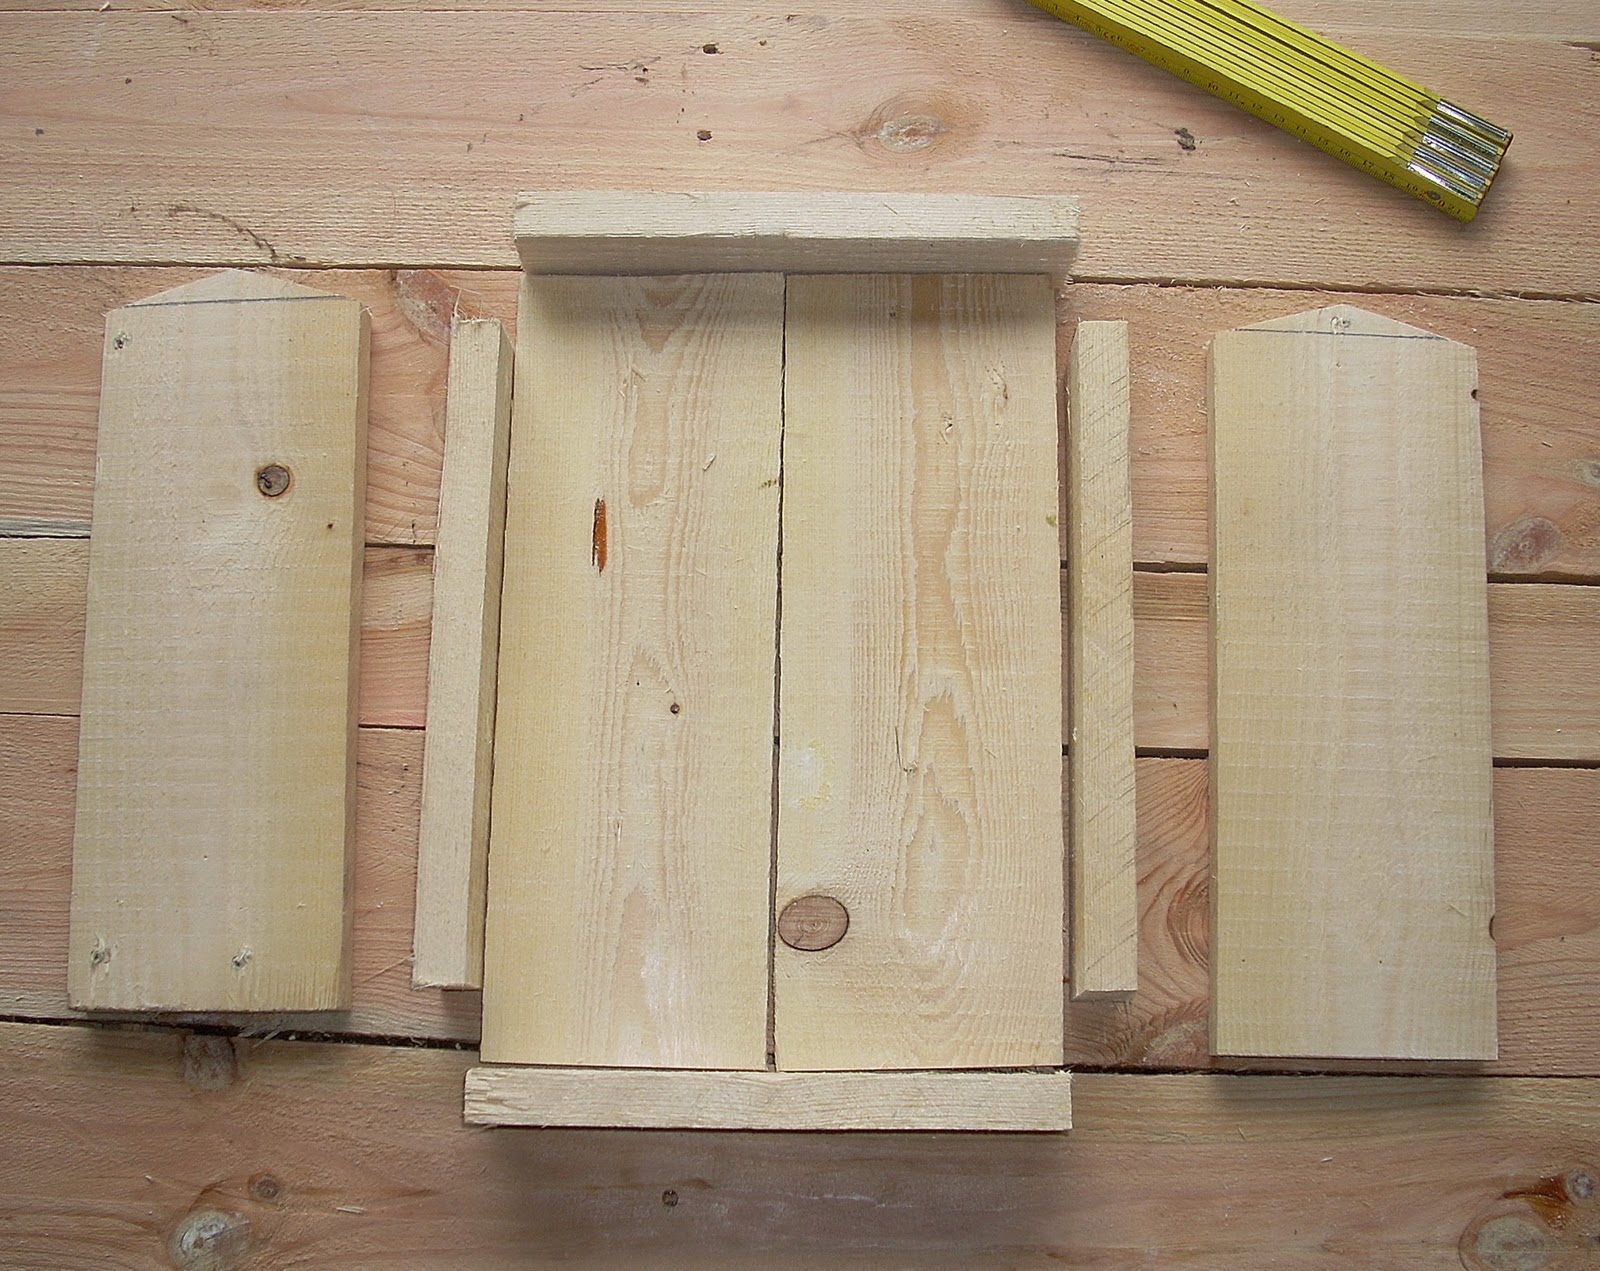 Fatto a mano in legno betulla naturali legno casetta mangiatoia tabella stazi 